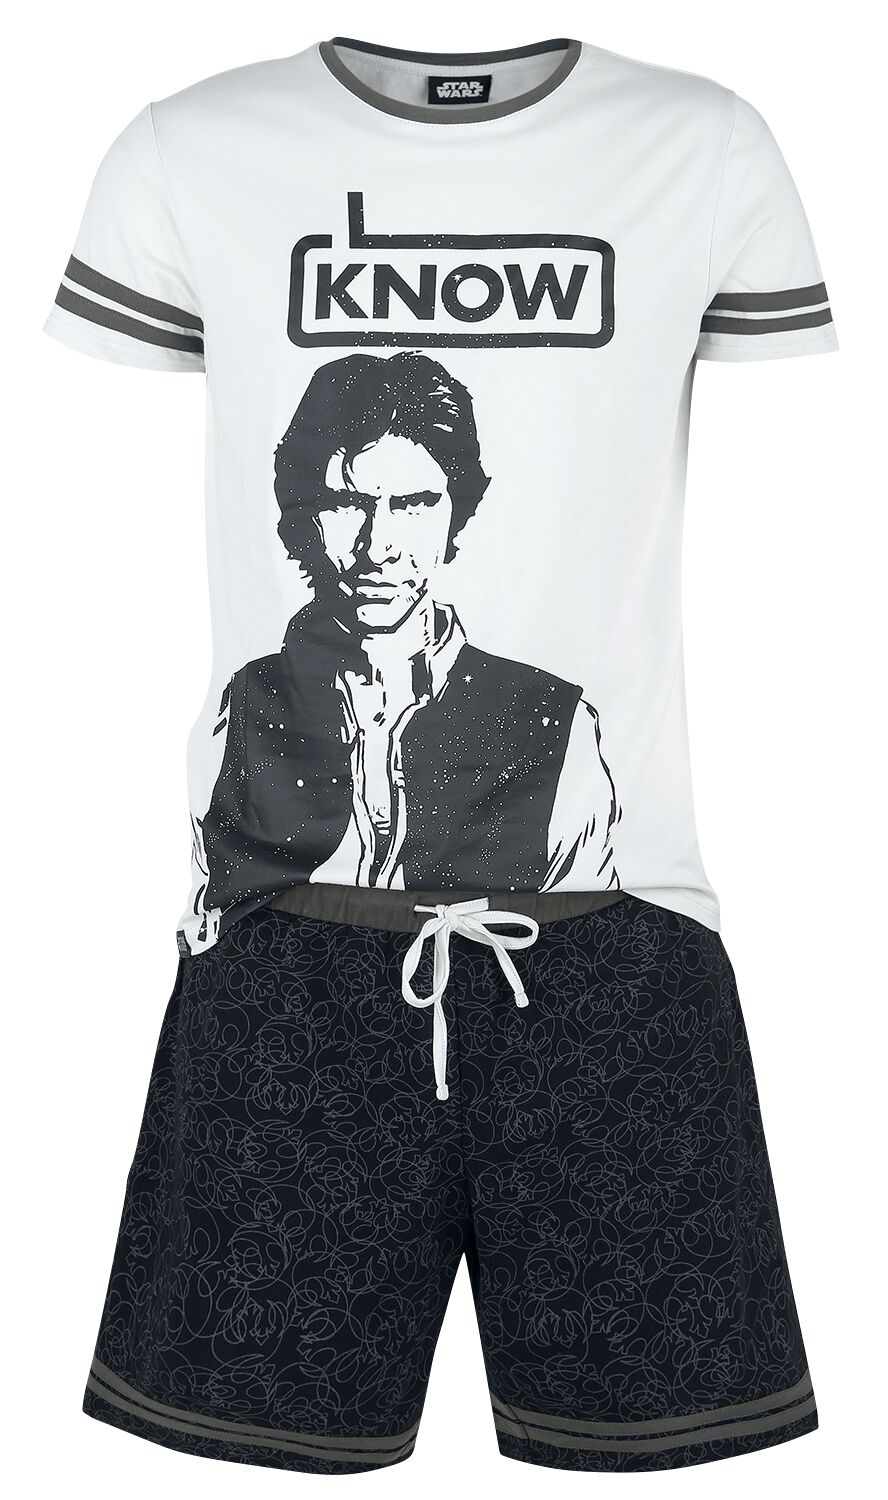 Star Wars Han Solo - I Know Schlafanzug grau schwarz in XXL